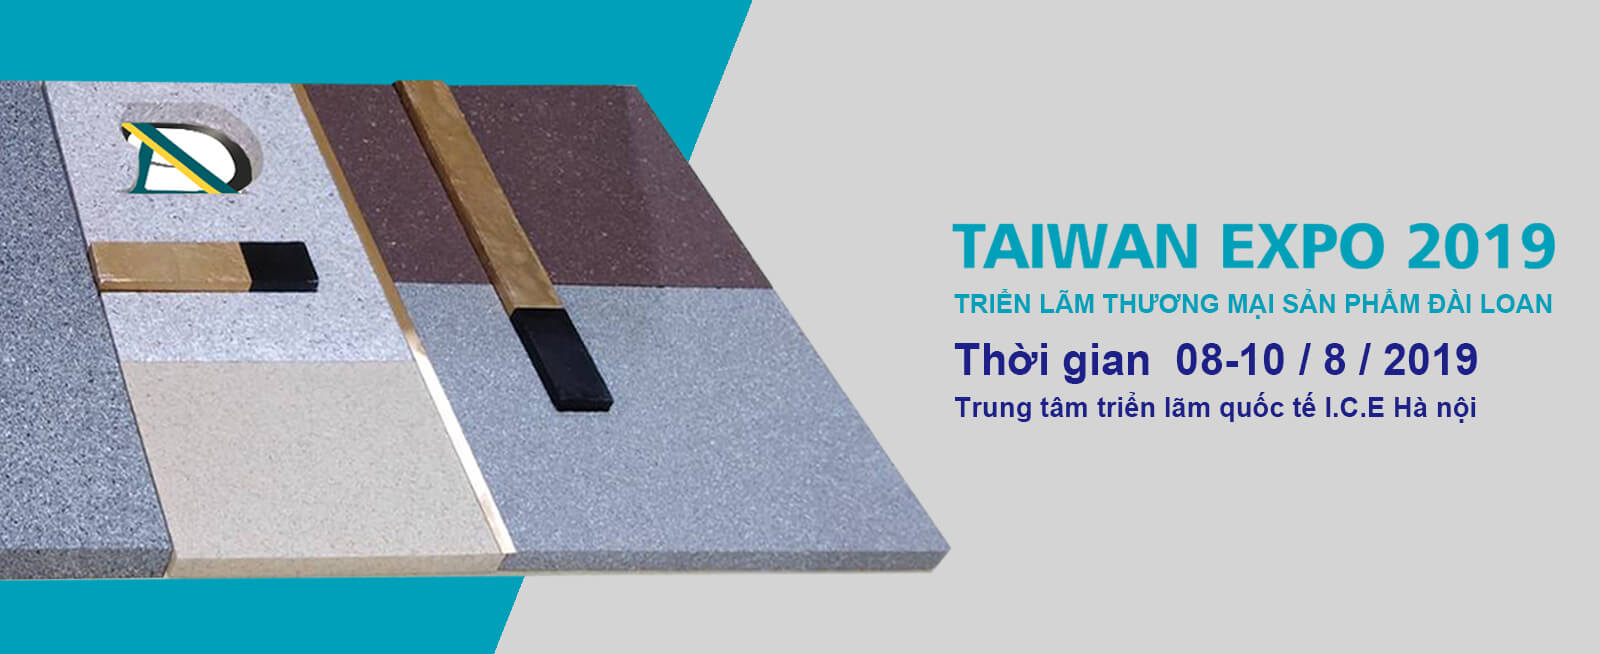 Từ ngày 8~10/8Triển lãm thương mại sản phẩm Đài Loan sẽ được tổ chức tại Trung tâm Triển lãm Quốc Tế I.C.E , 